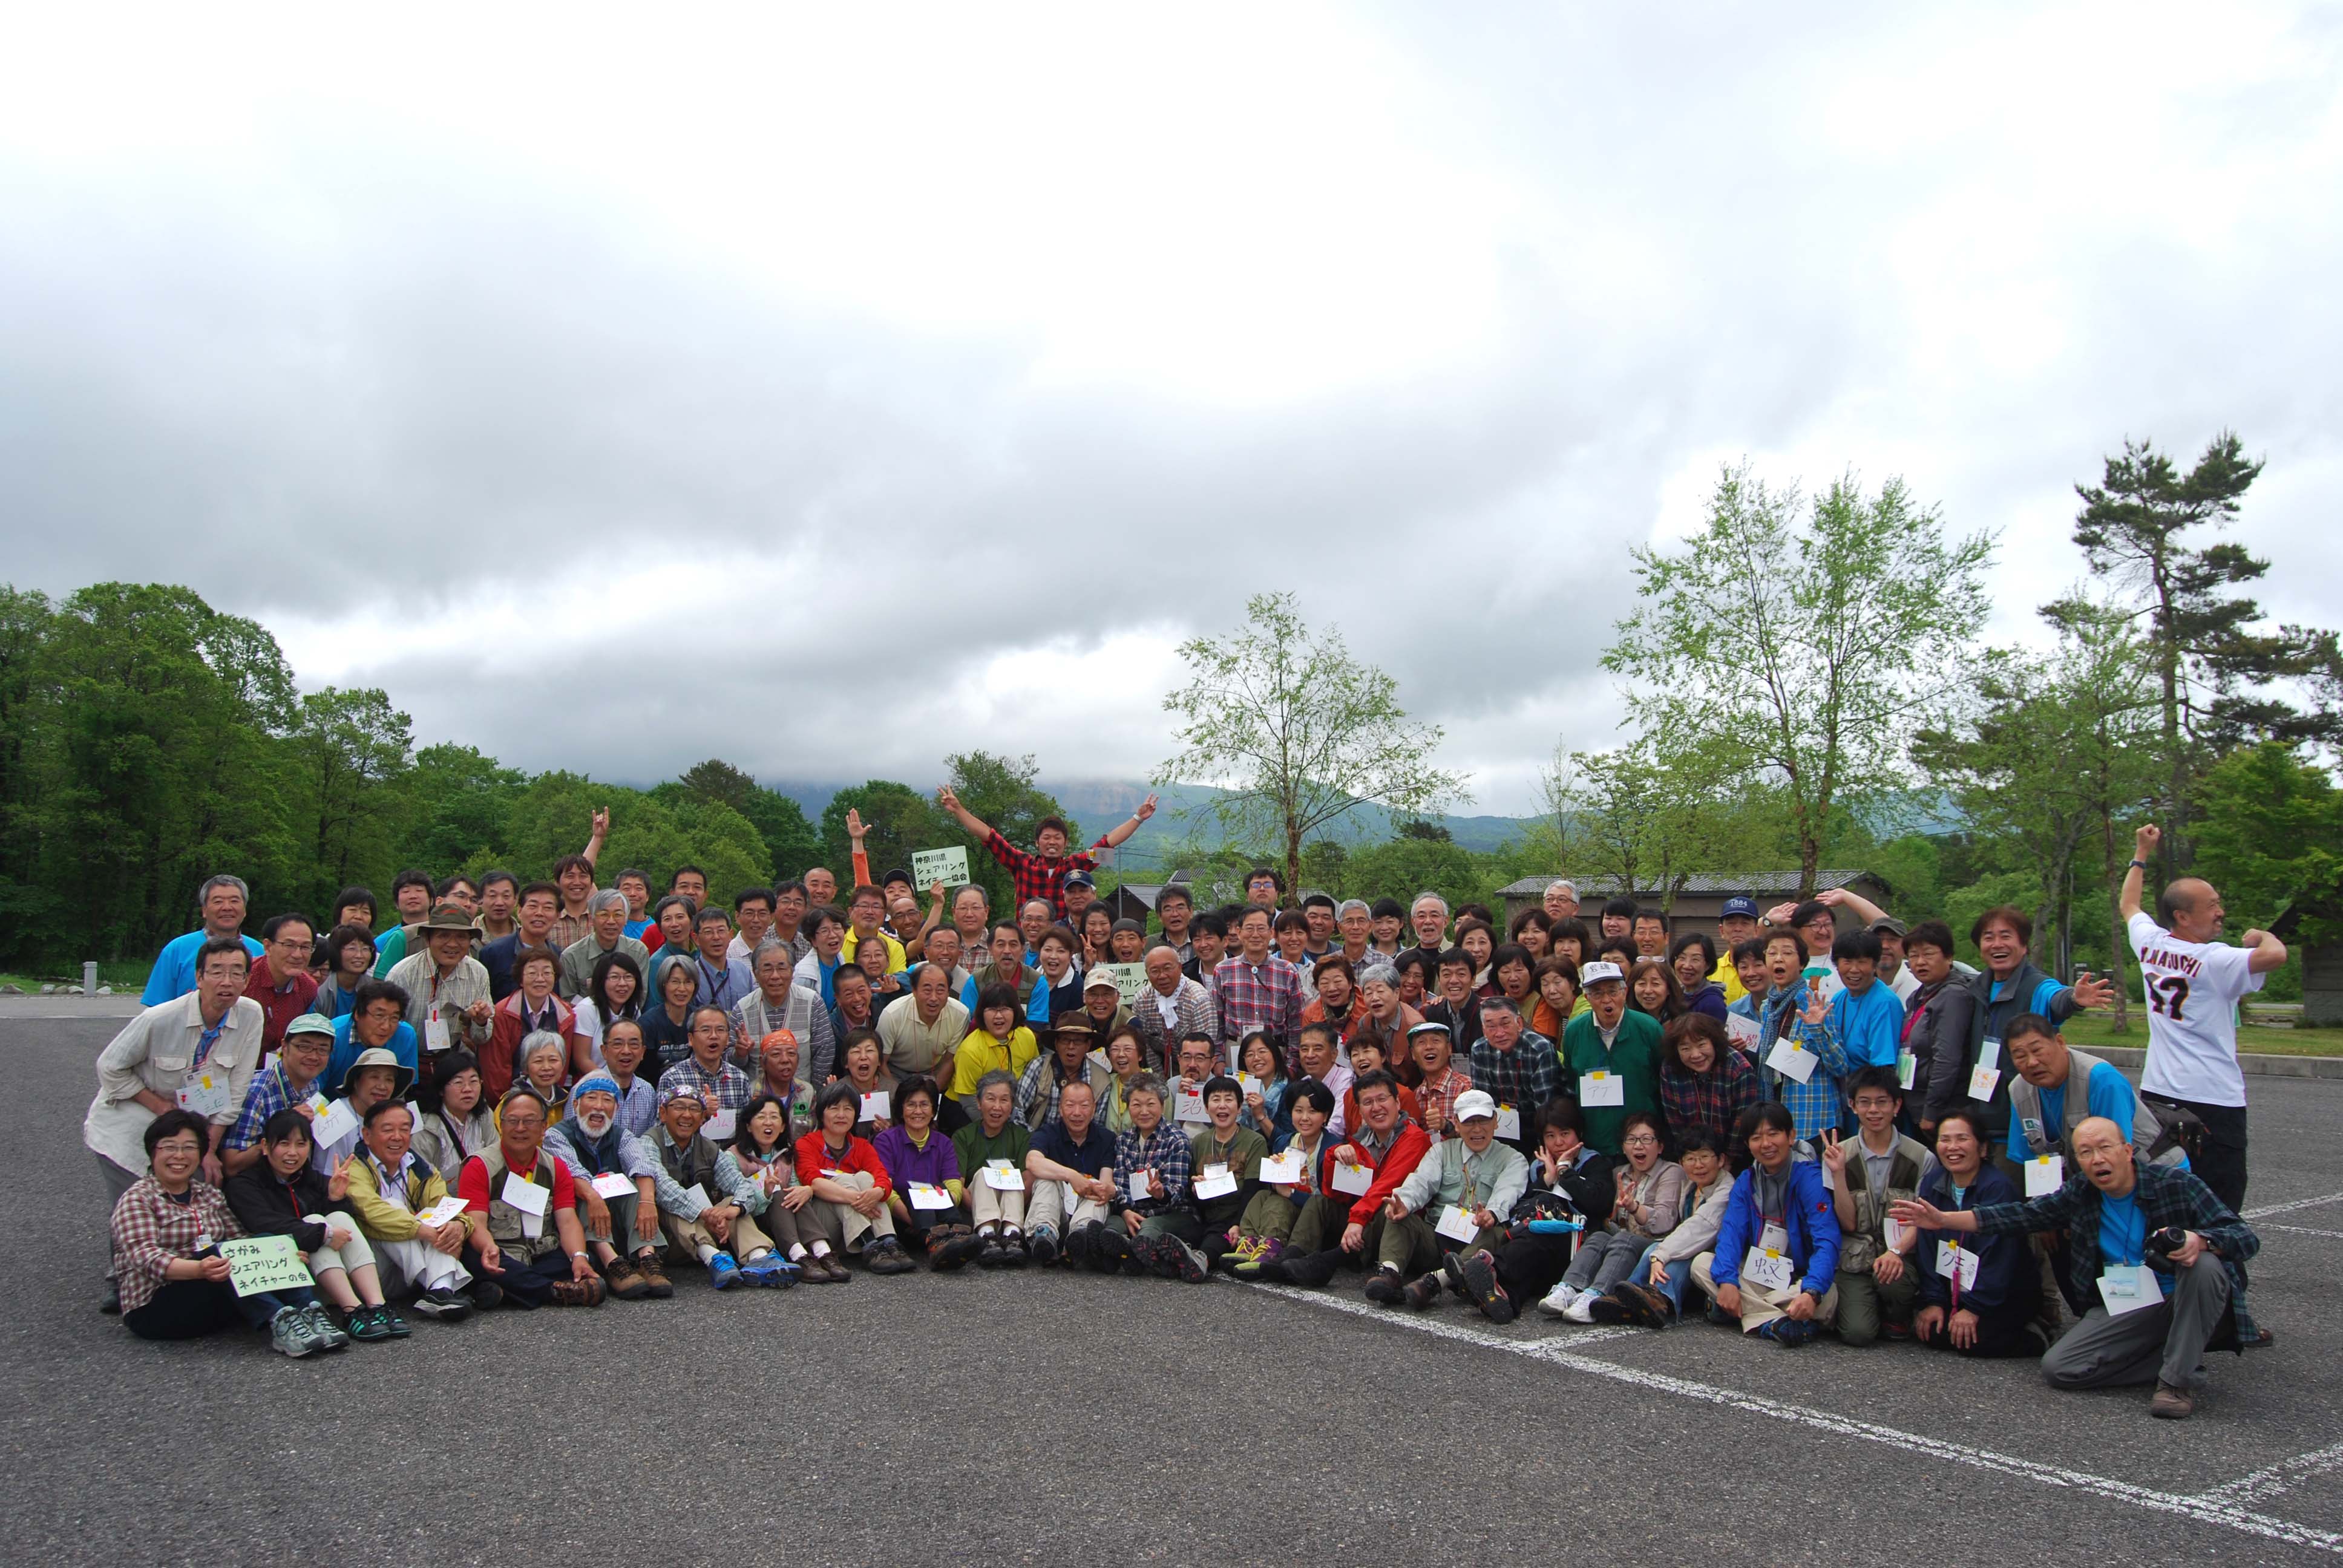 http://www.naturegame.or.jp/about_us/staff_blog/images/zenken_Fukushima2014P.jpg